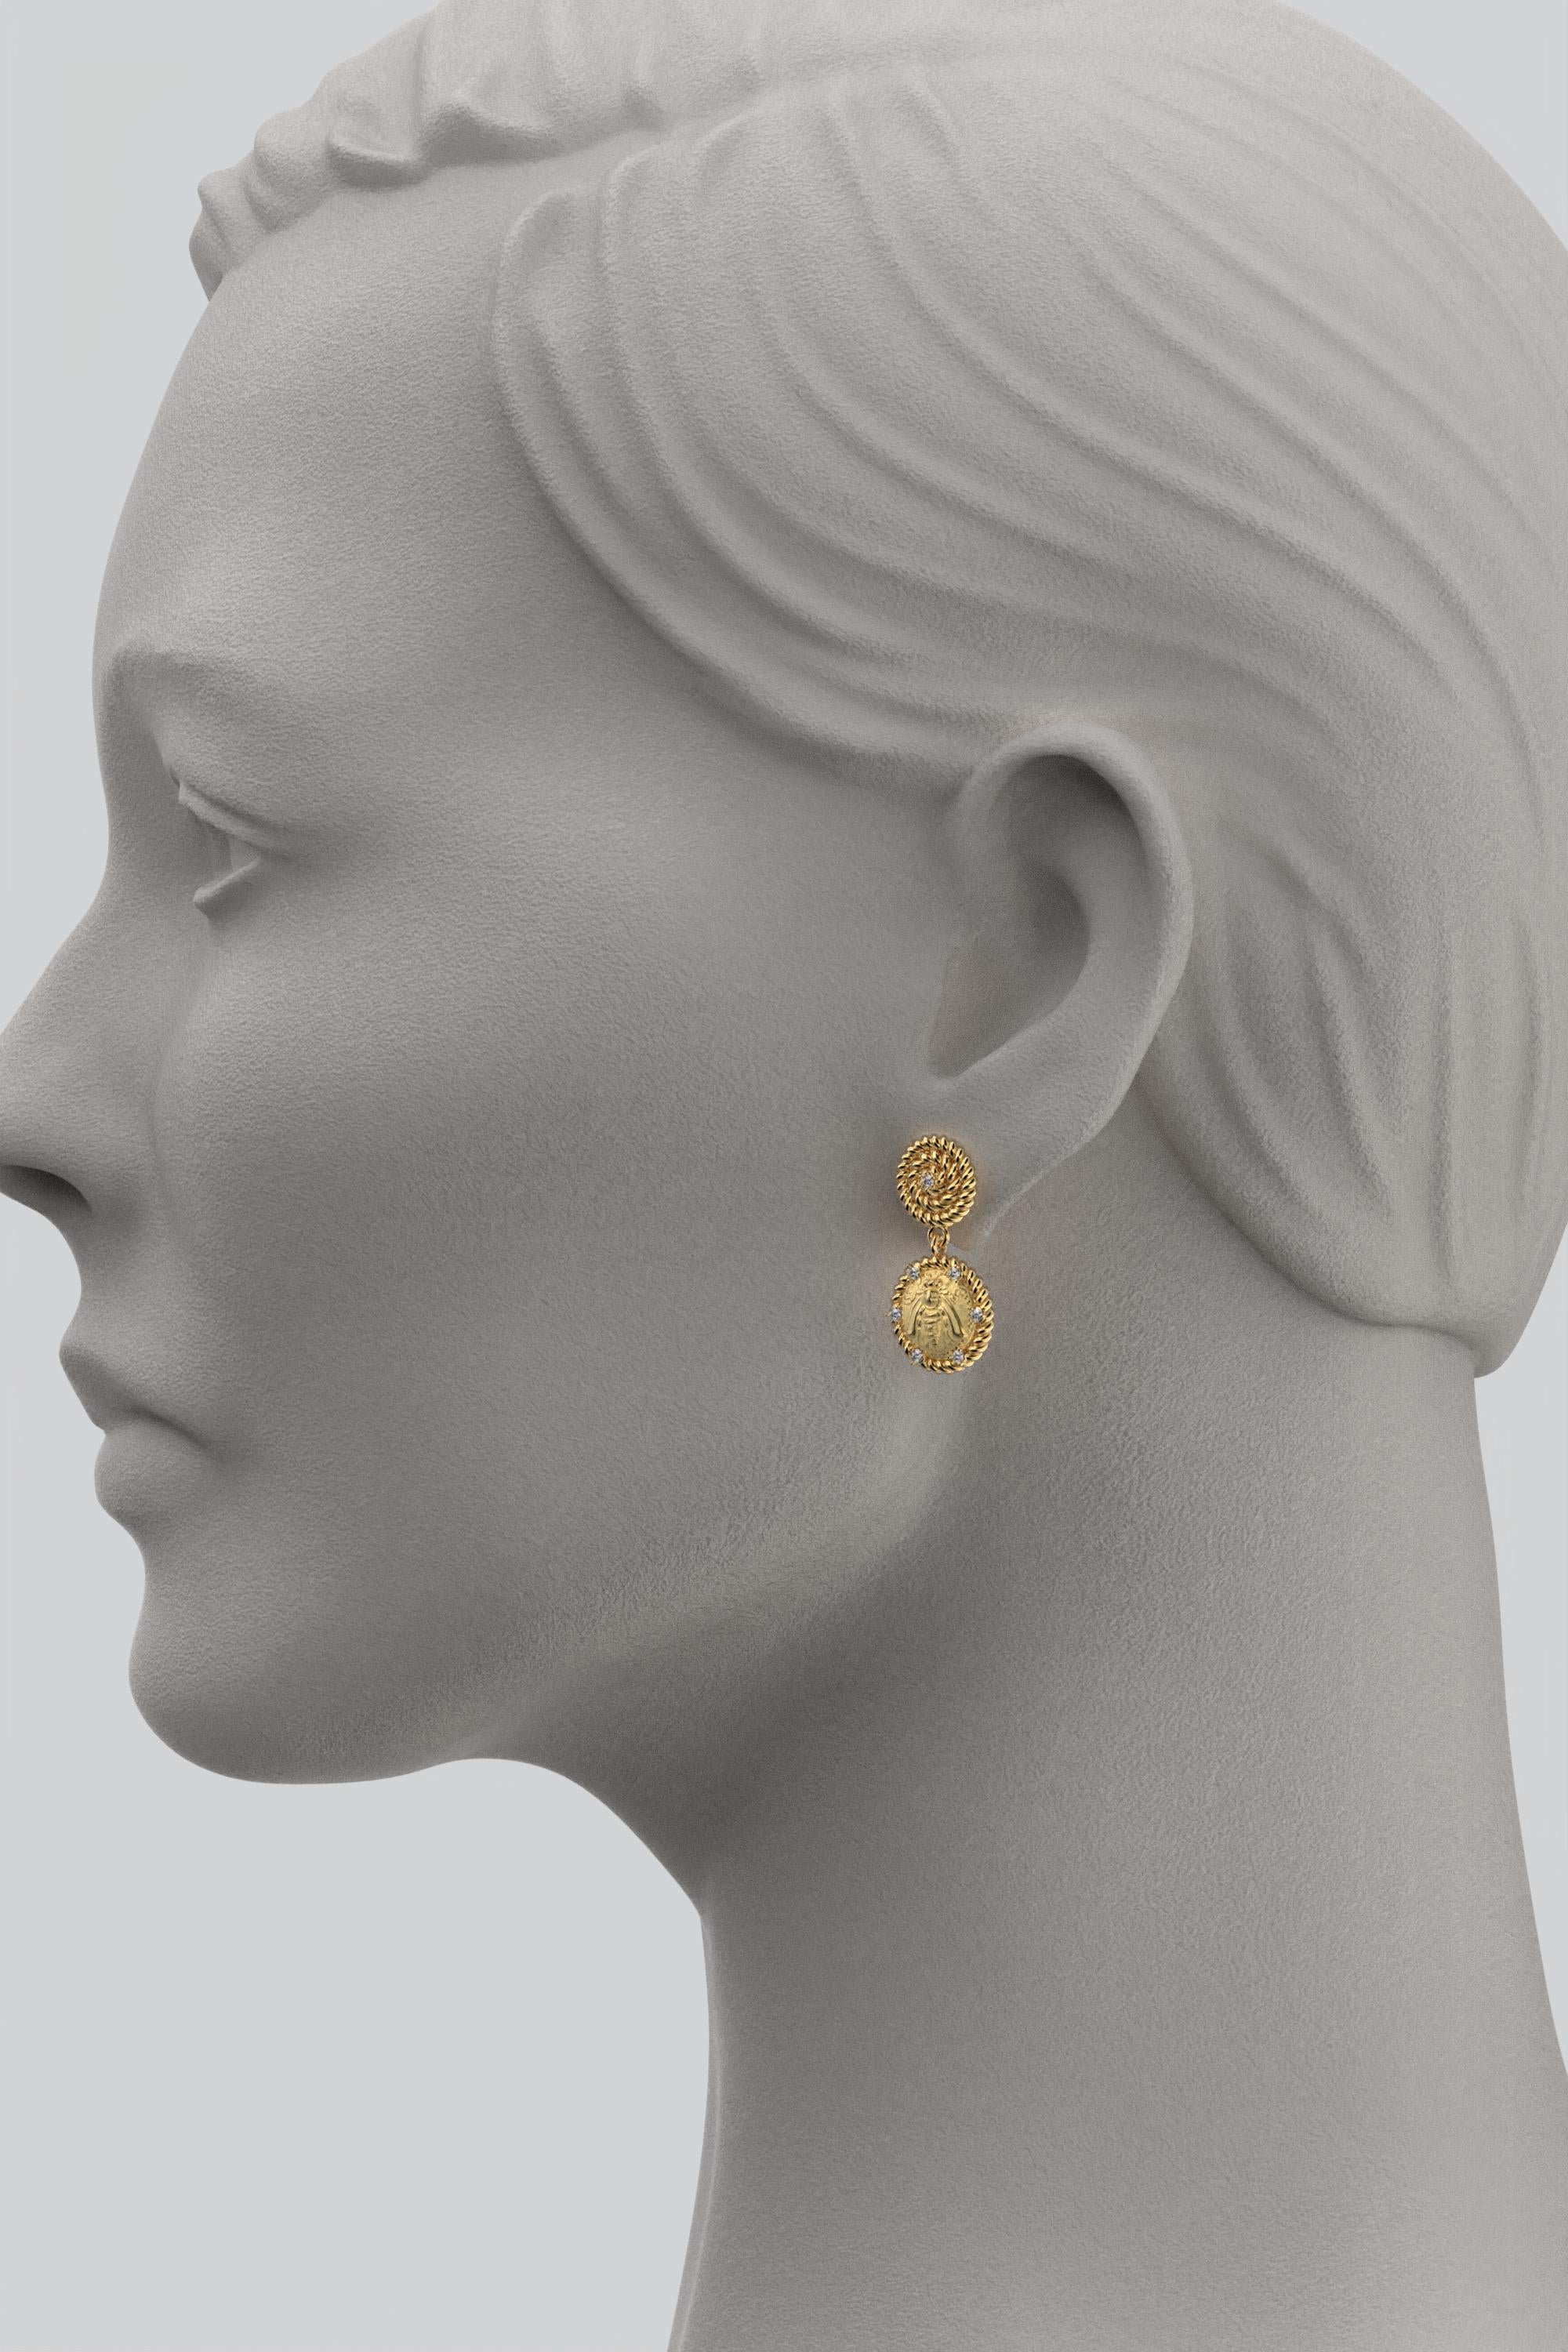 Women's Italian Jewelry  14k Gold Dangle Earrings With Diamonds  Bee Earrings  For Sale